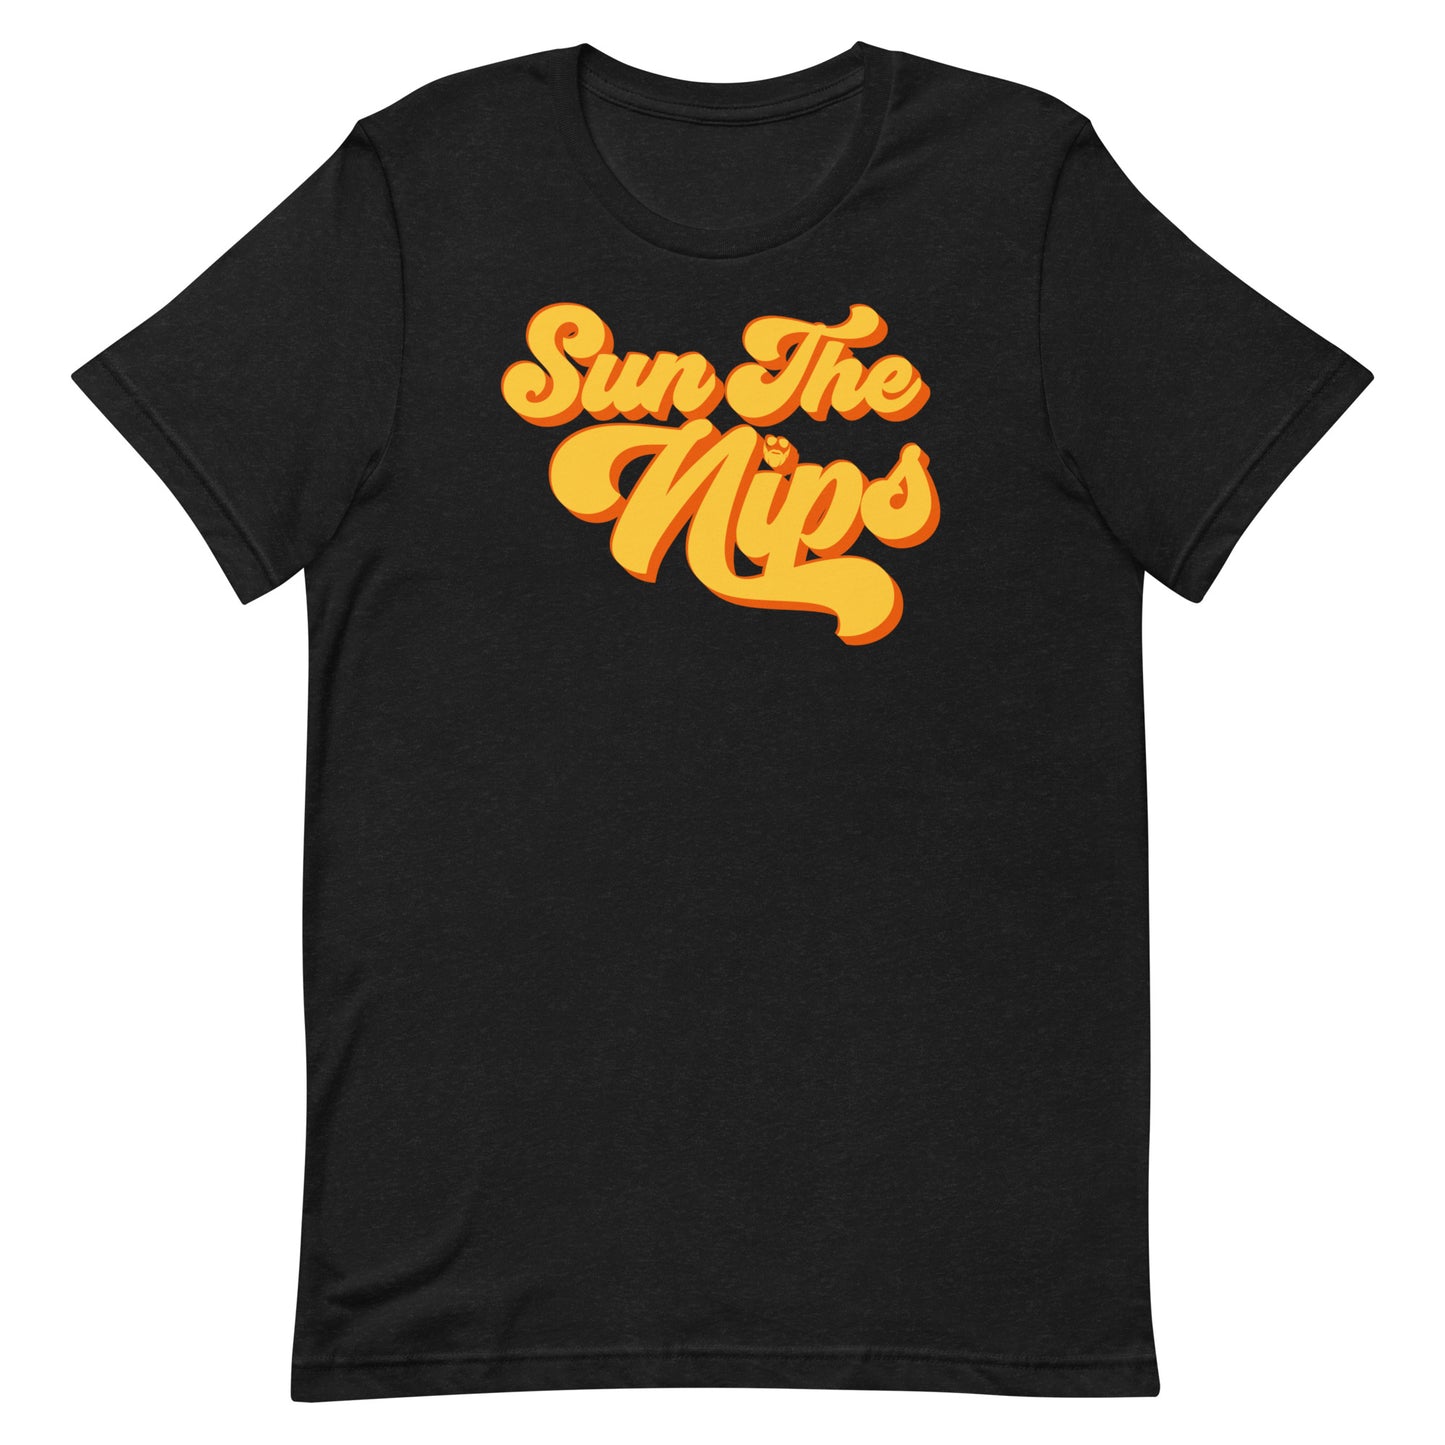 Sun The Nips T-Shirt